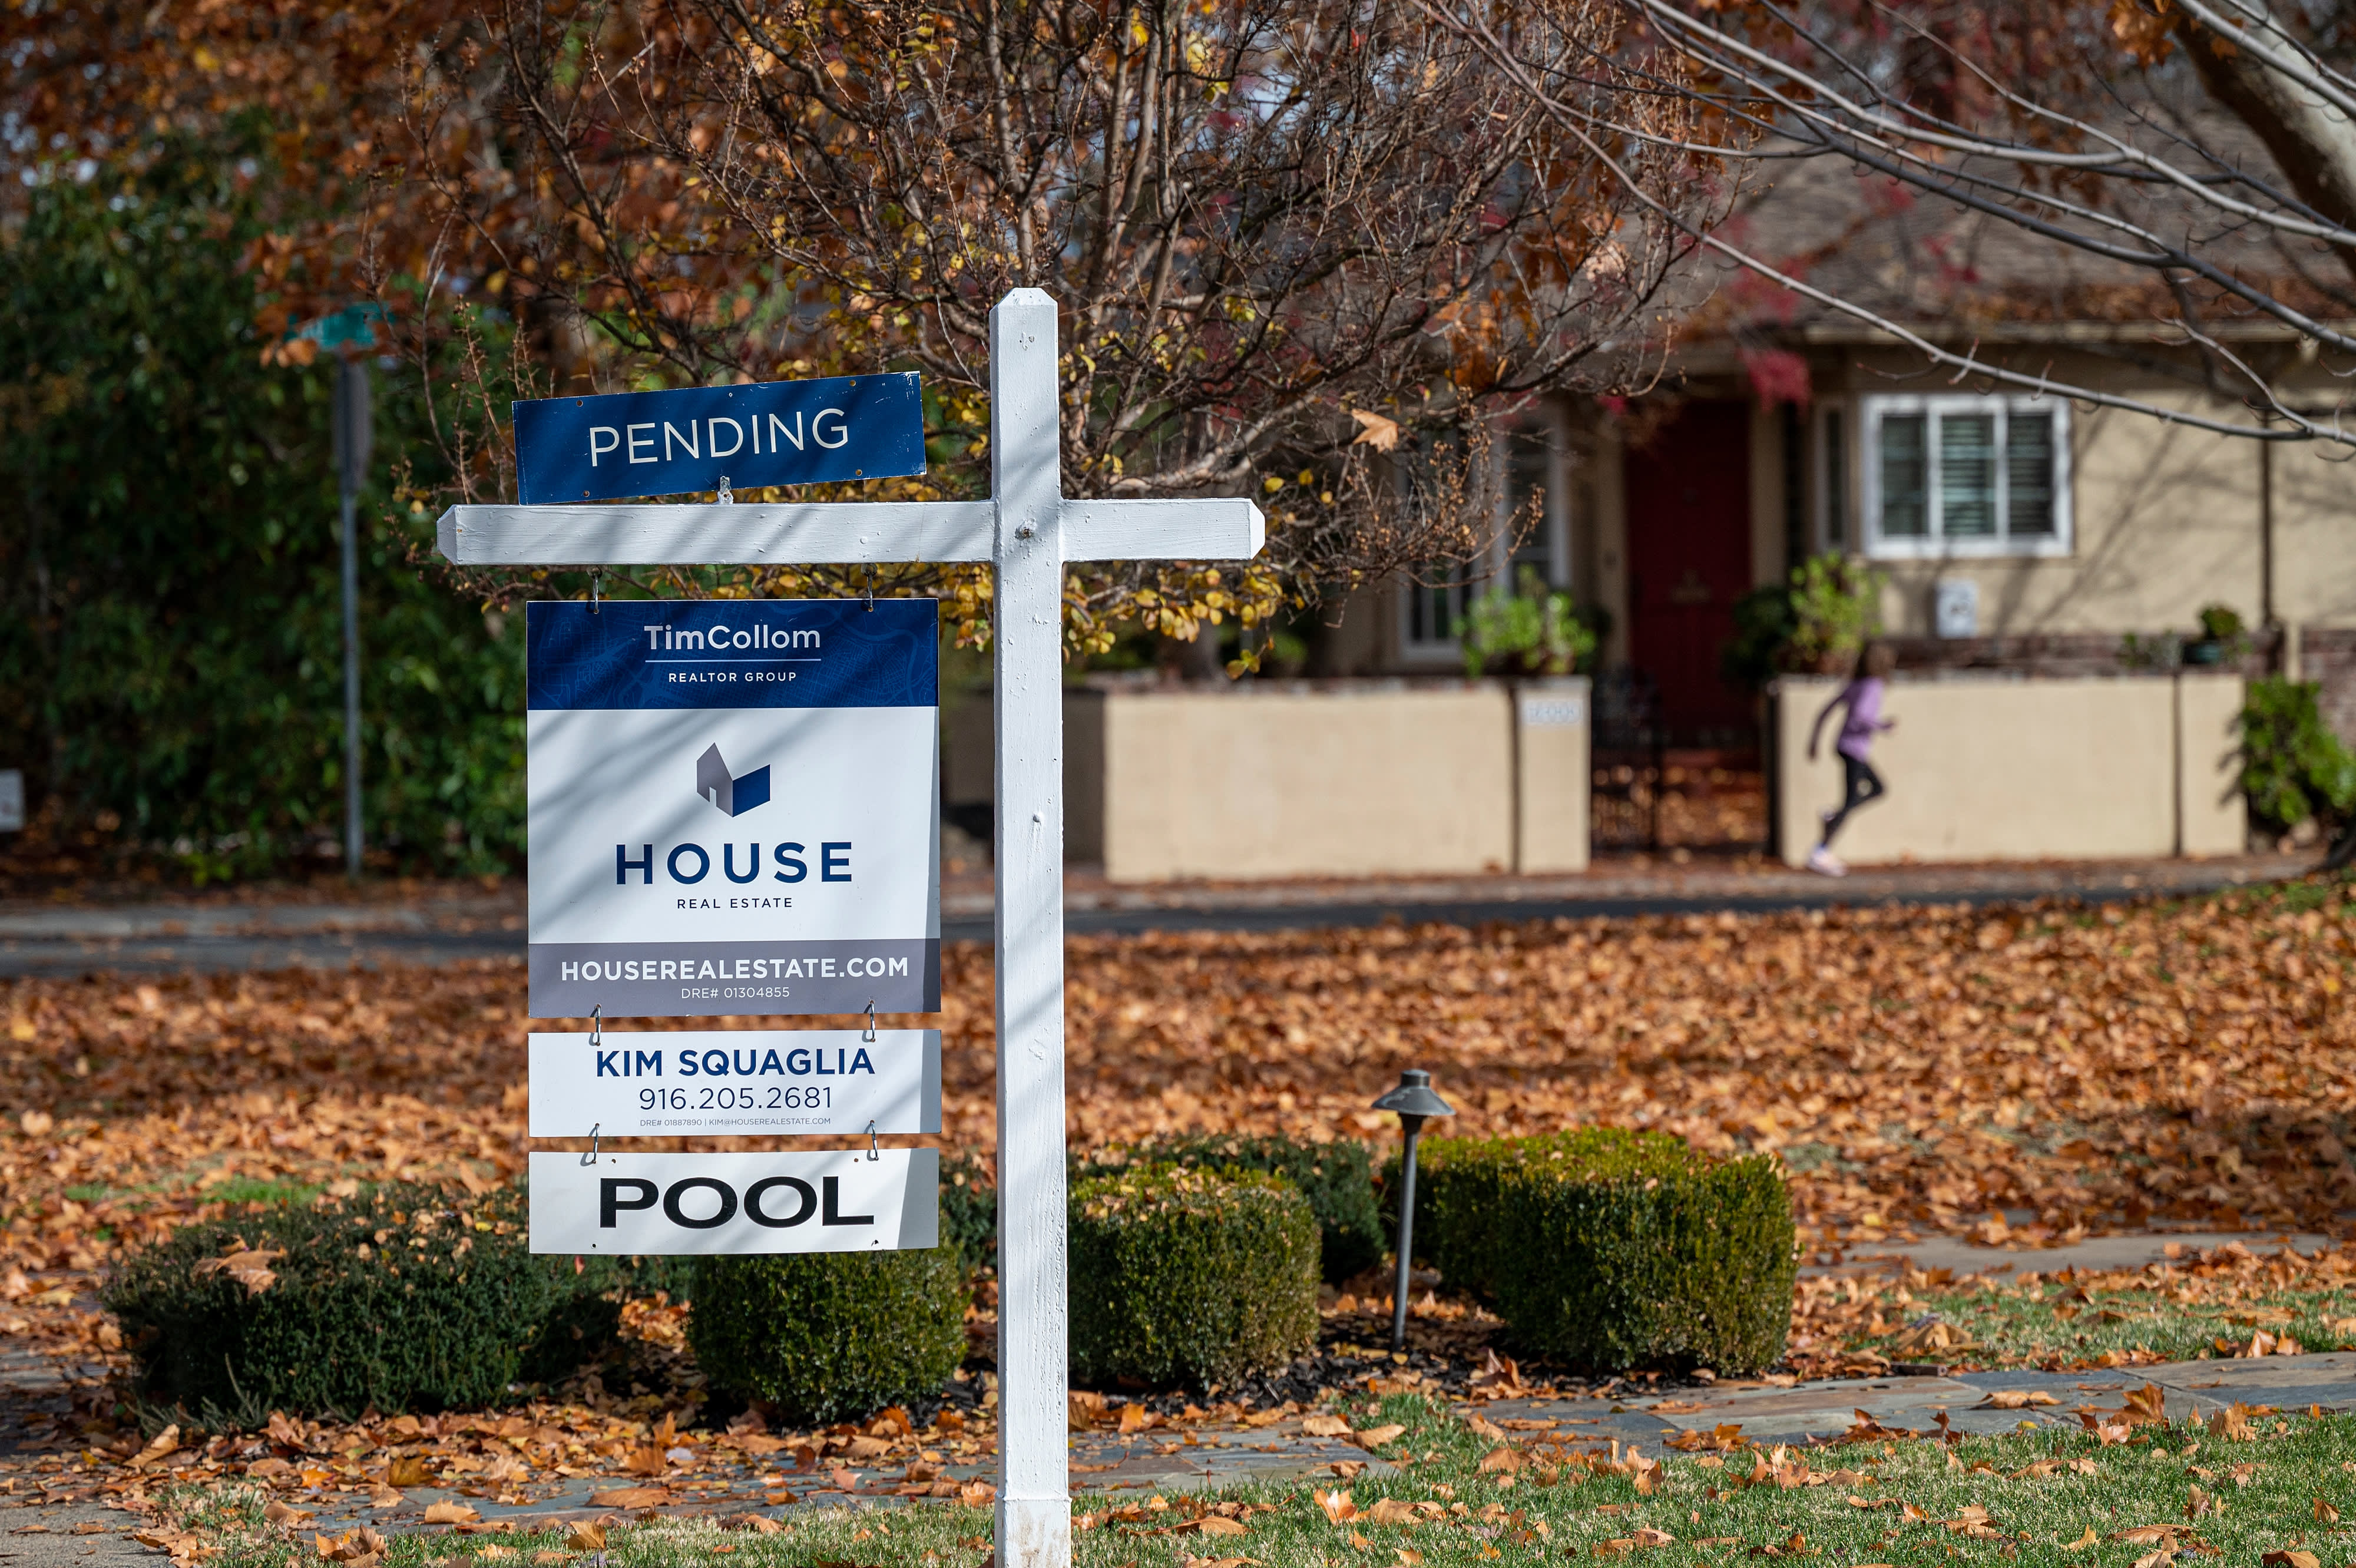 Der Immobilienmarkt ist schmerzhaft, hässlich und besorgt, da die Zinsen um 8 % steigen